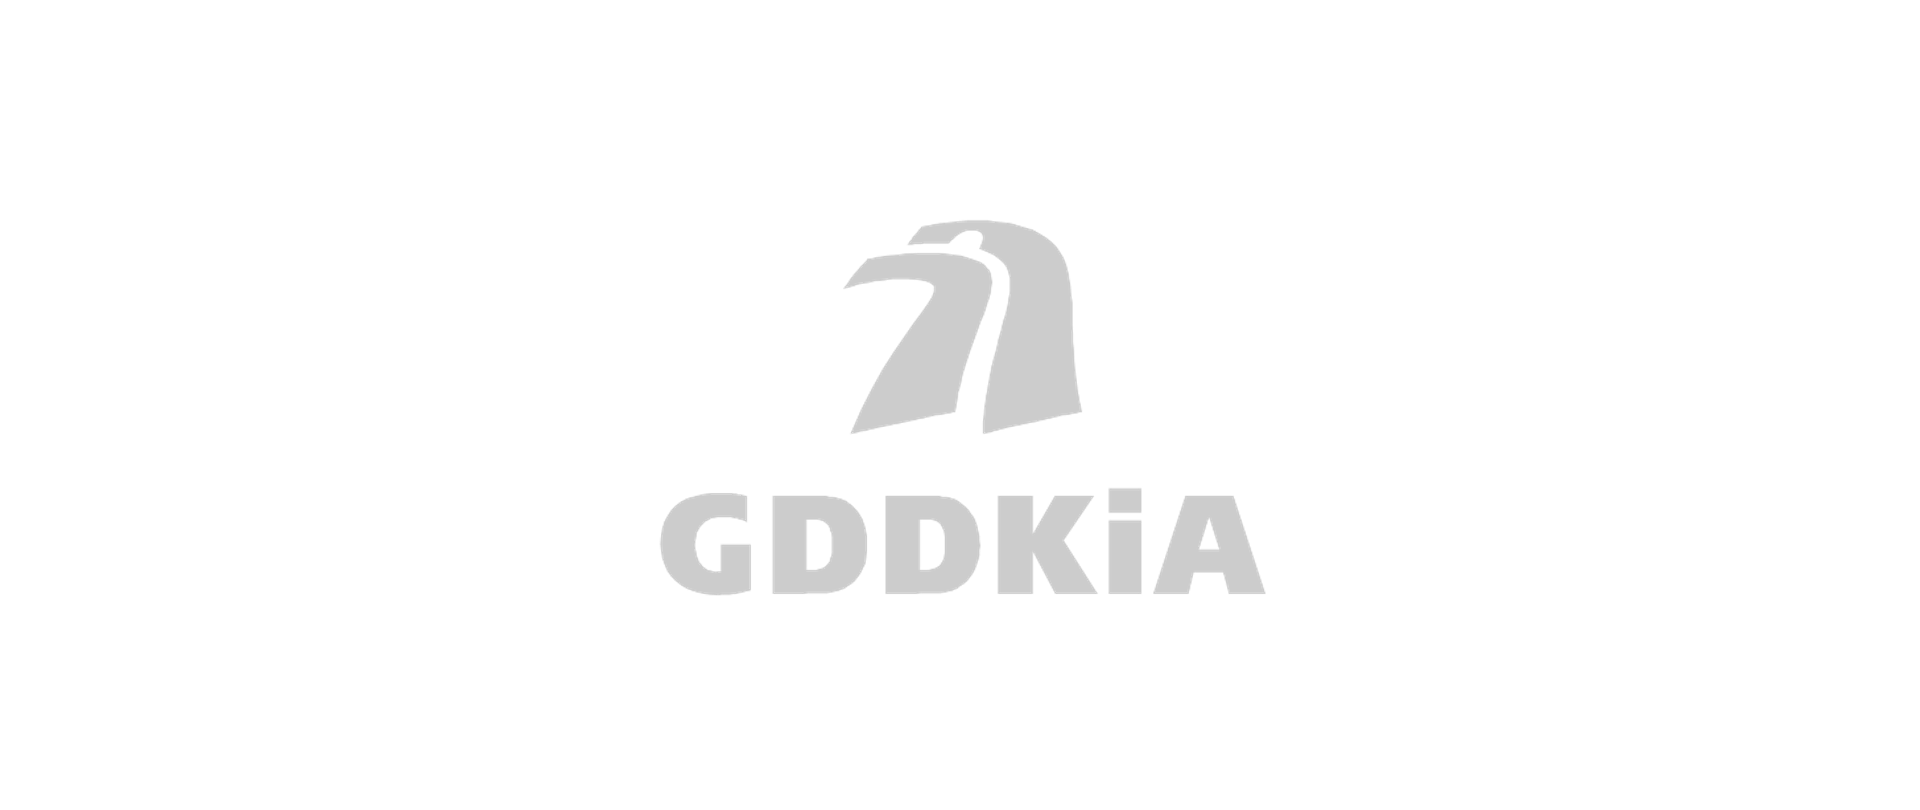 logo GDDKiA w szarym kolorze